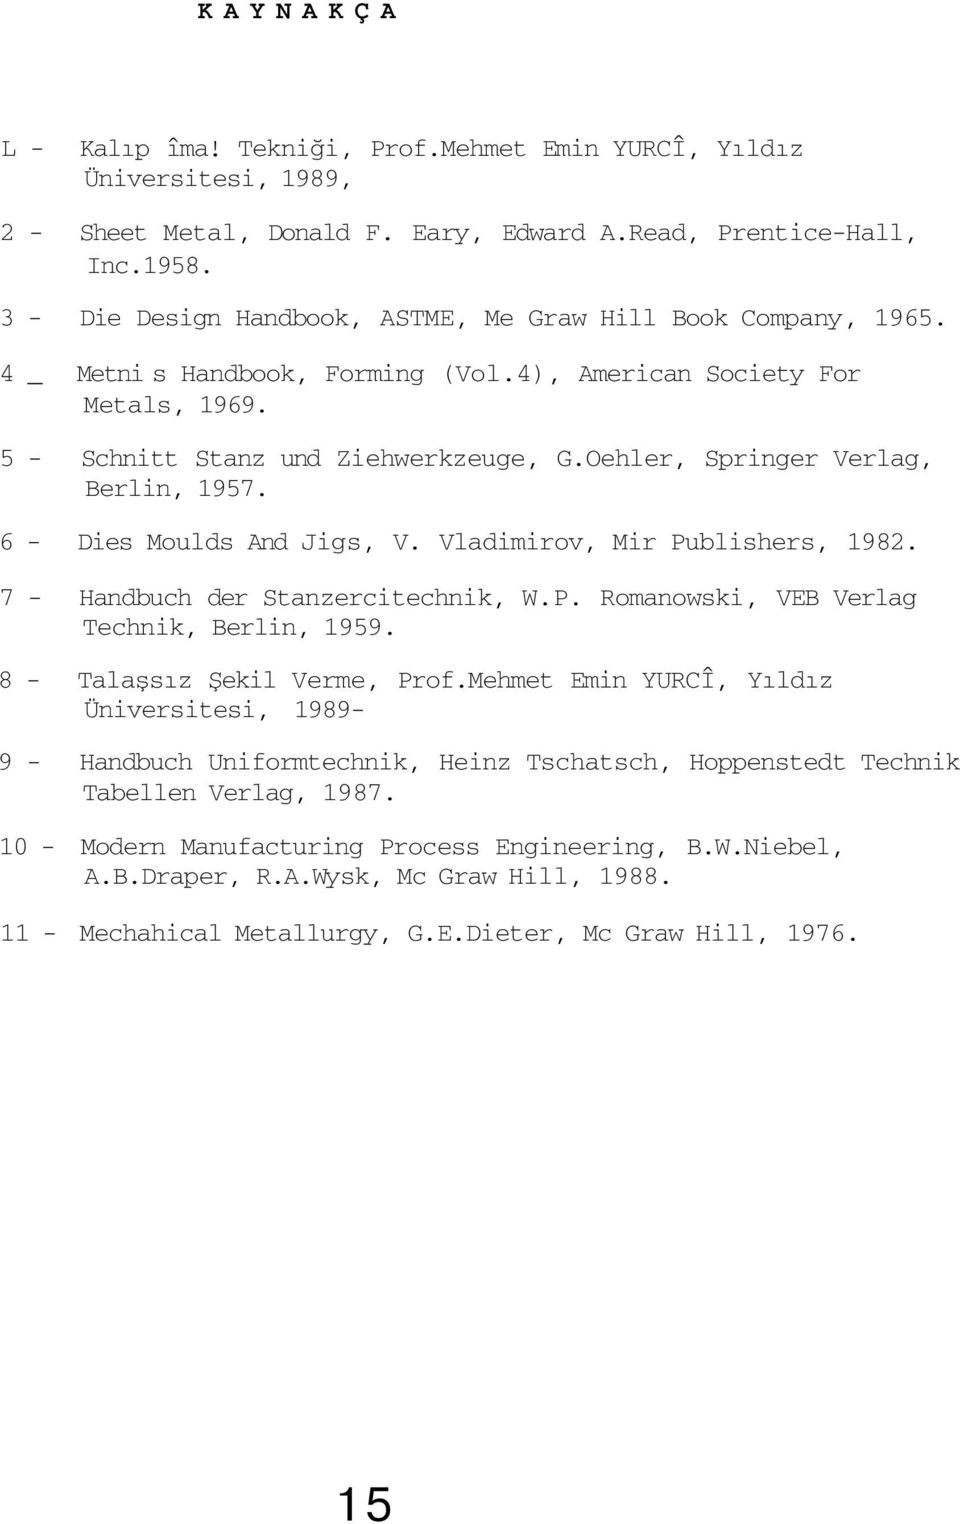 Oehler, Springer Verlag, Berlin, 1957. 6 - Dies Moulds And Jigs, V. Vladimirov, Mir Publishers, 1982. 7 - Handbuch der Stanzercitechnik, W.P. Romanowski, VEB Verlag Technik, Berlin, 1959.